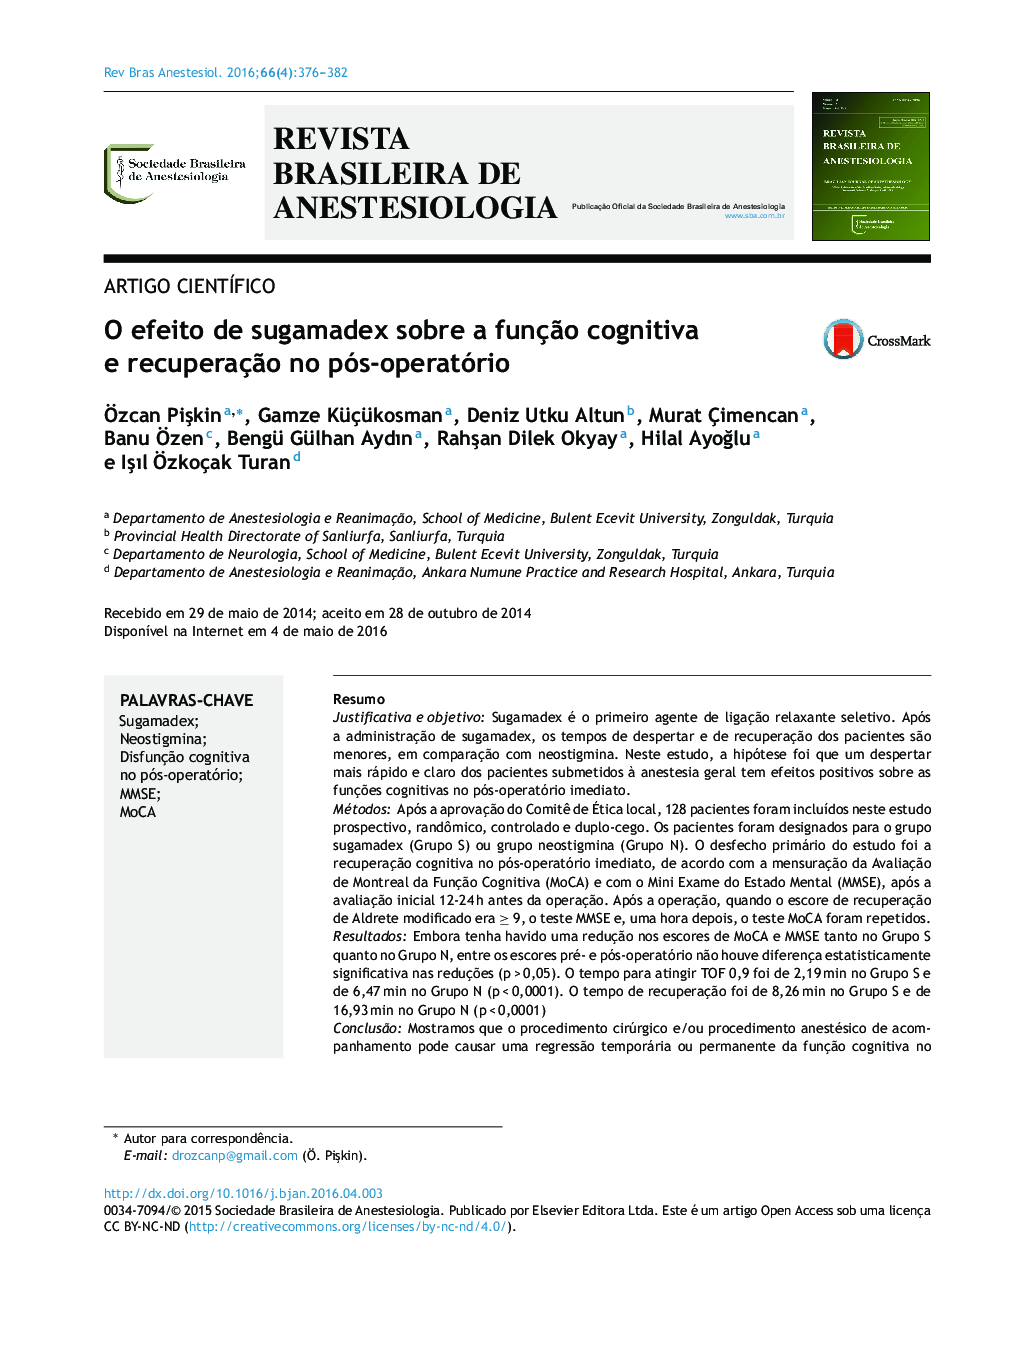 O efeito de sugamadex sobre a função cognitiva e recuperação no pós‐operatório